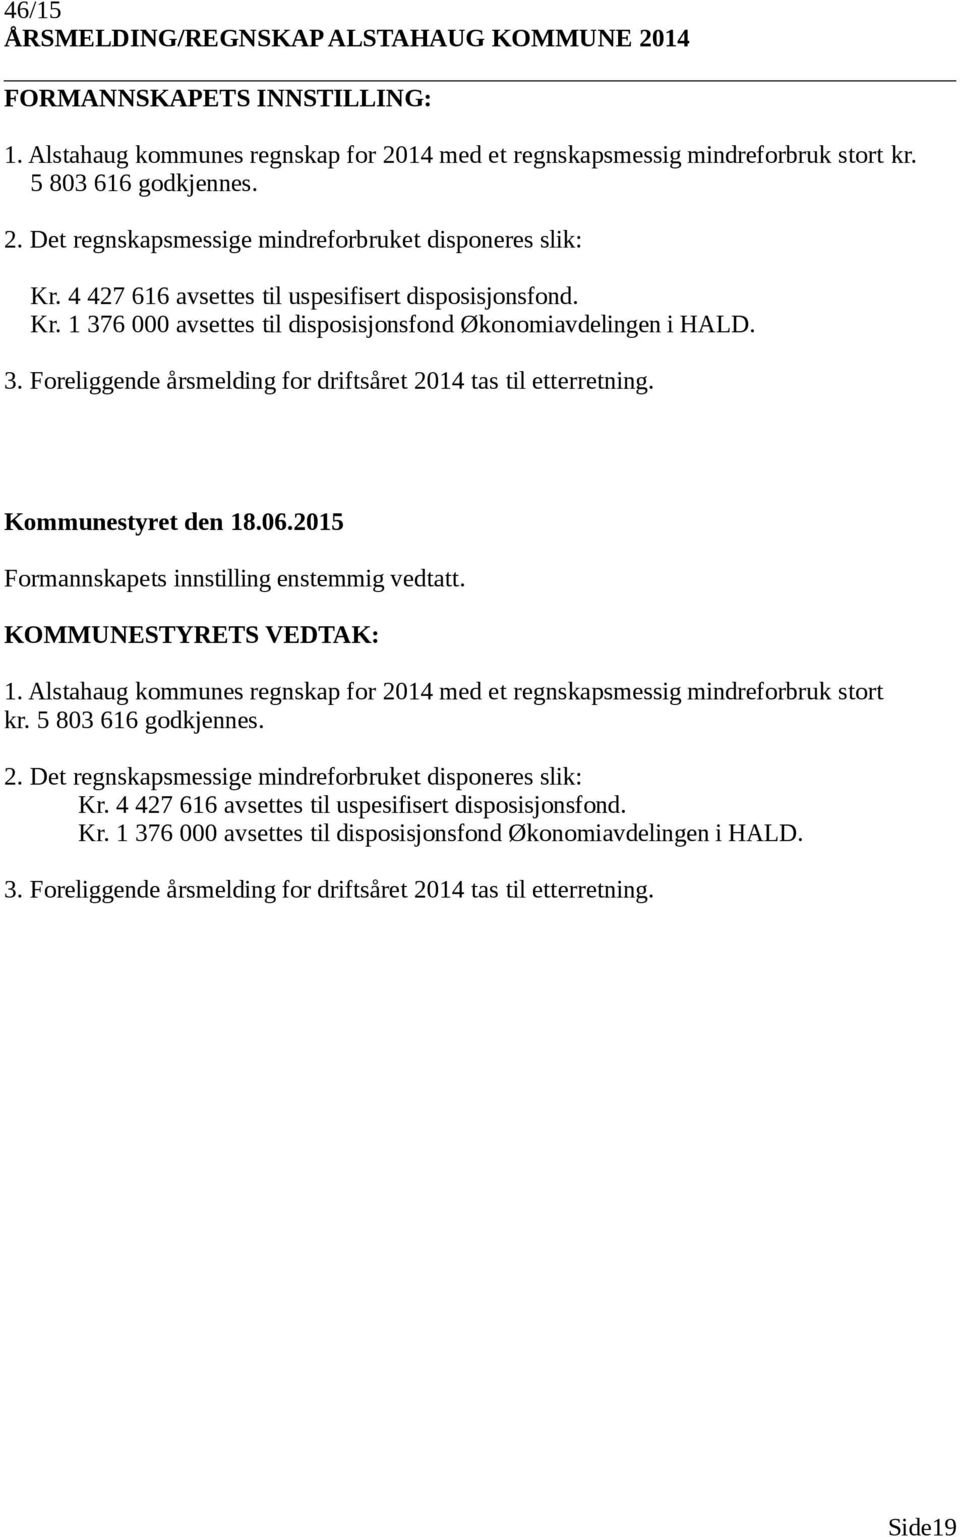 Formannskapets innstilling enstemmig vedtatt. 1. Alstahaug kommunes regnskap for 2014 med et regnskapsmessig mindreforbruk stort kr. 5 803 616 godkjennes. 2. Det regnskapsmessige mindreforbruket disponeres slik: Kr.